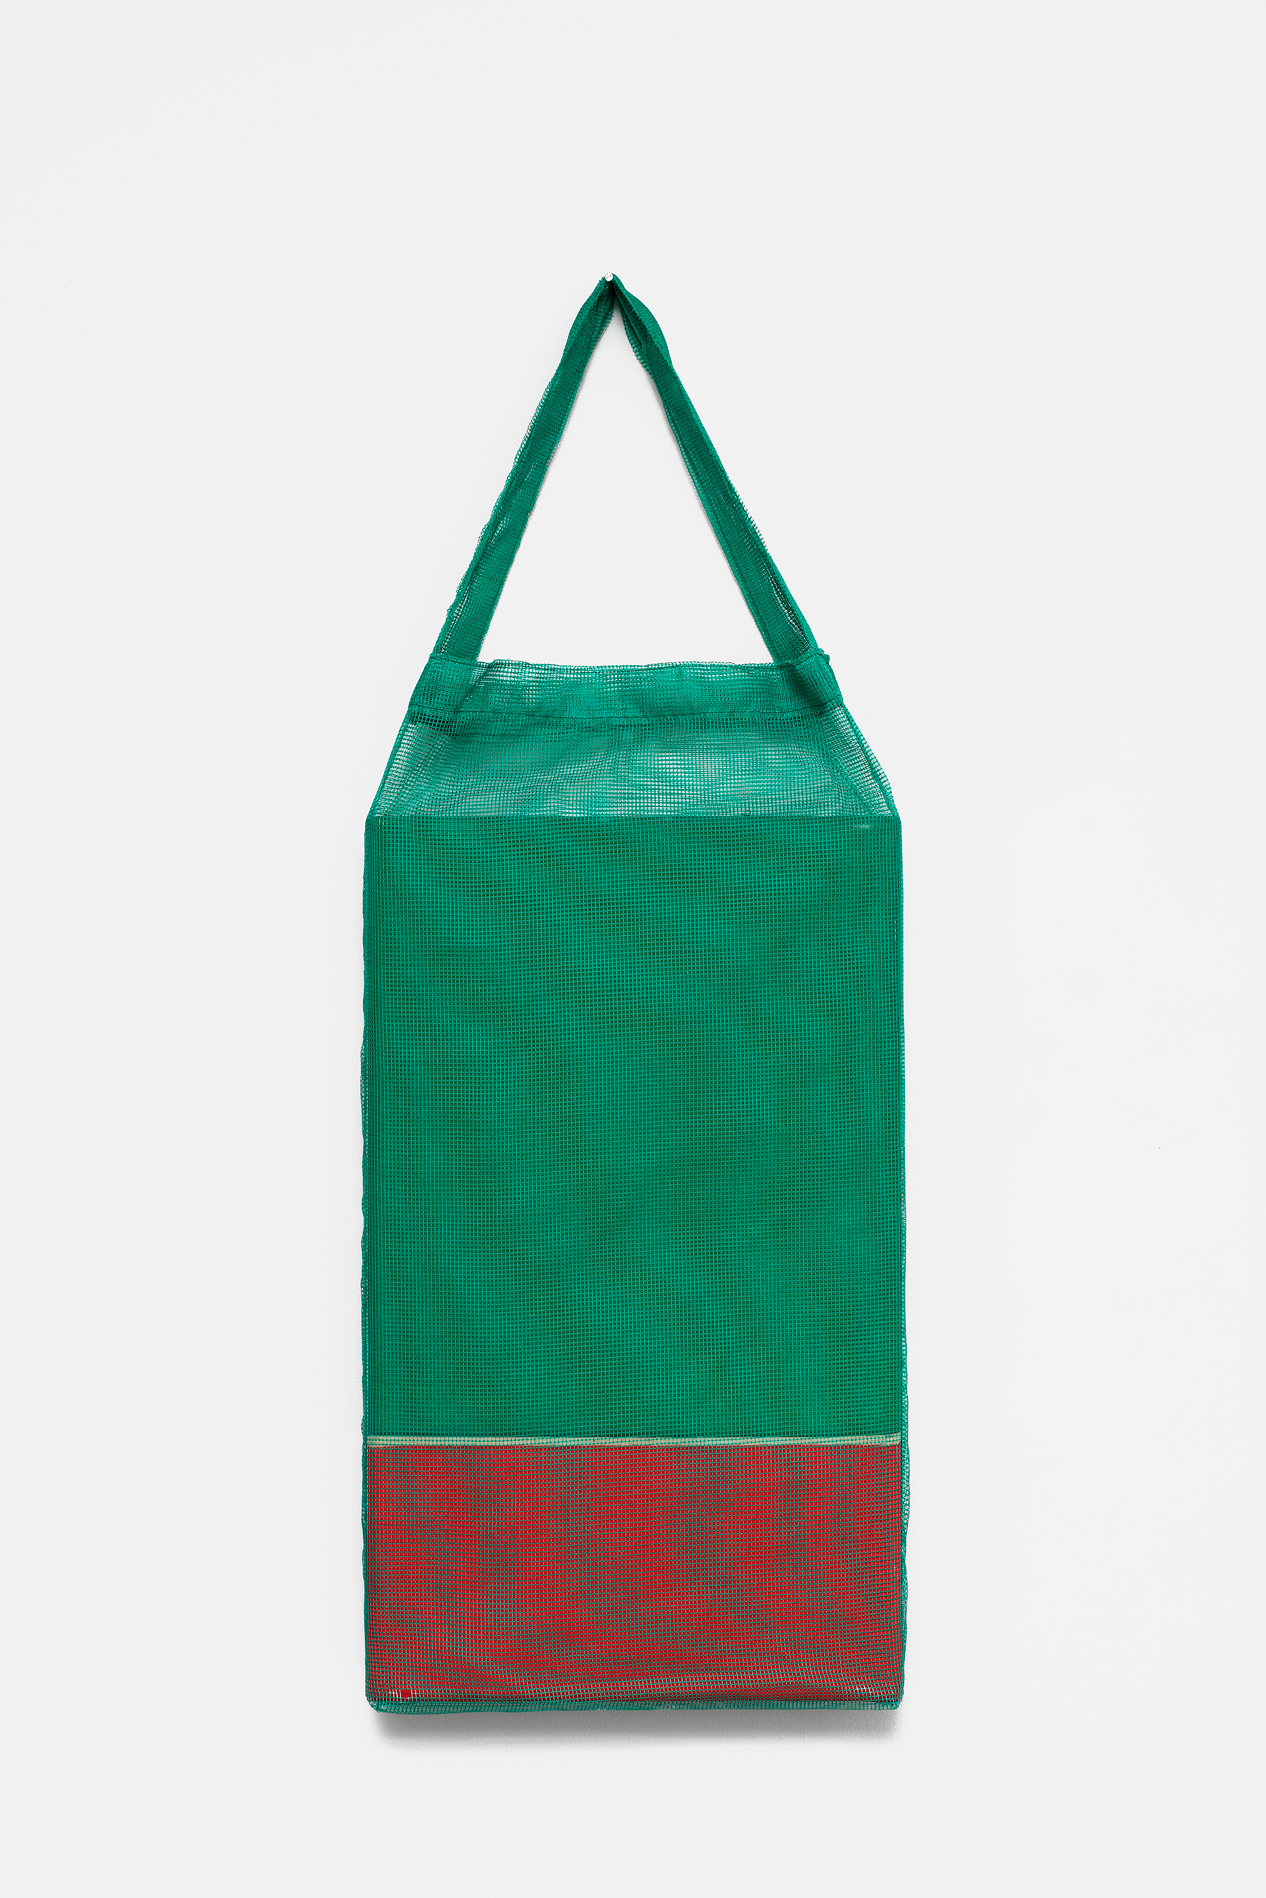 , 2018, Pigments on cotton fabric [batik] and bag, 82 x 30 x 5 cm, , unique artwork, Photo: Aurélien Mole